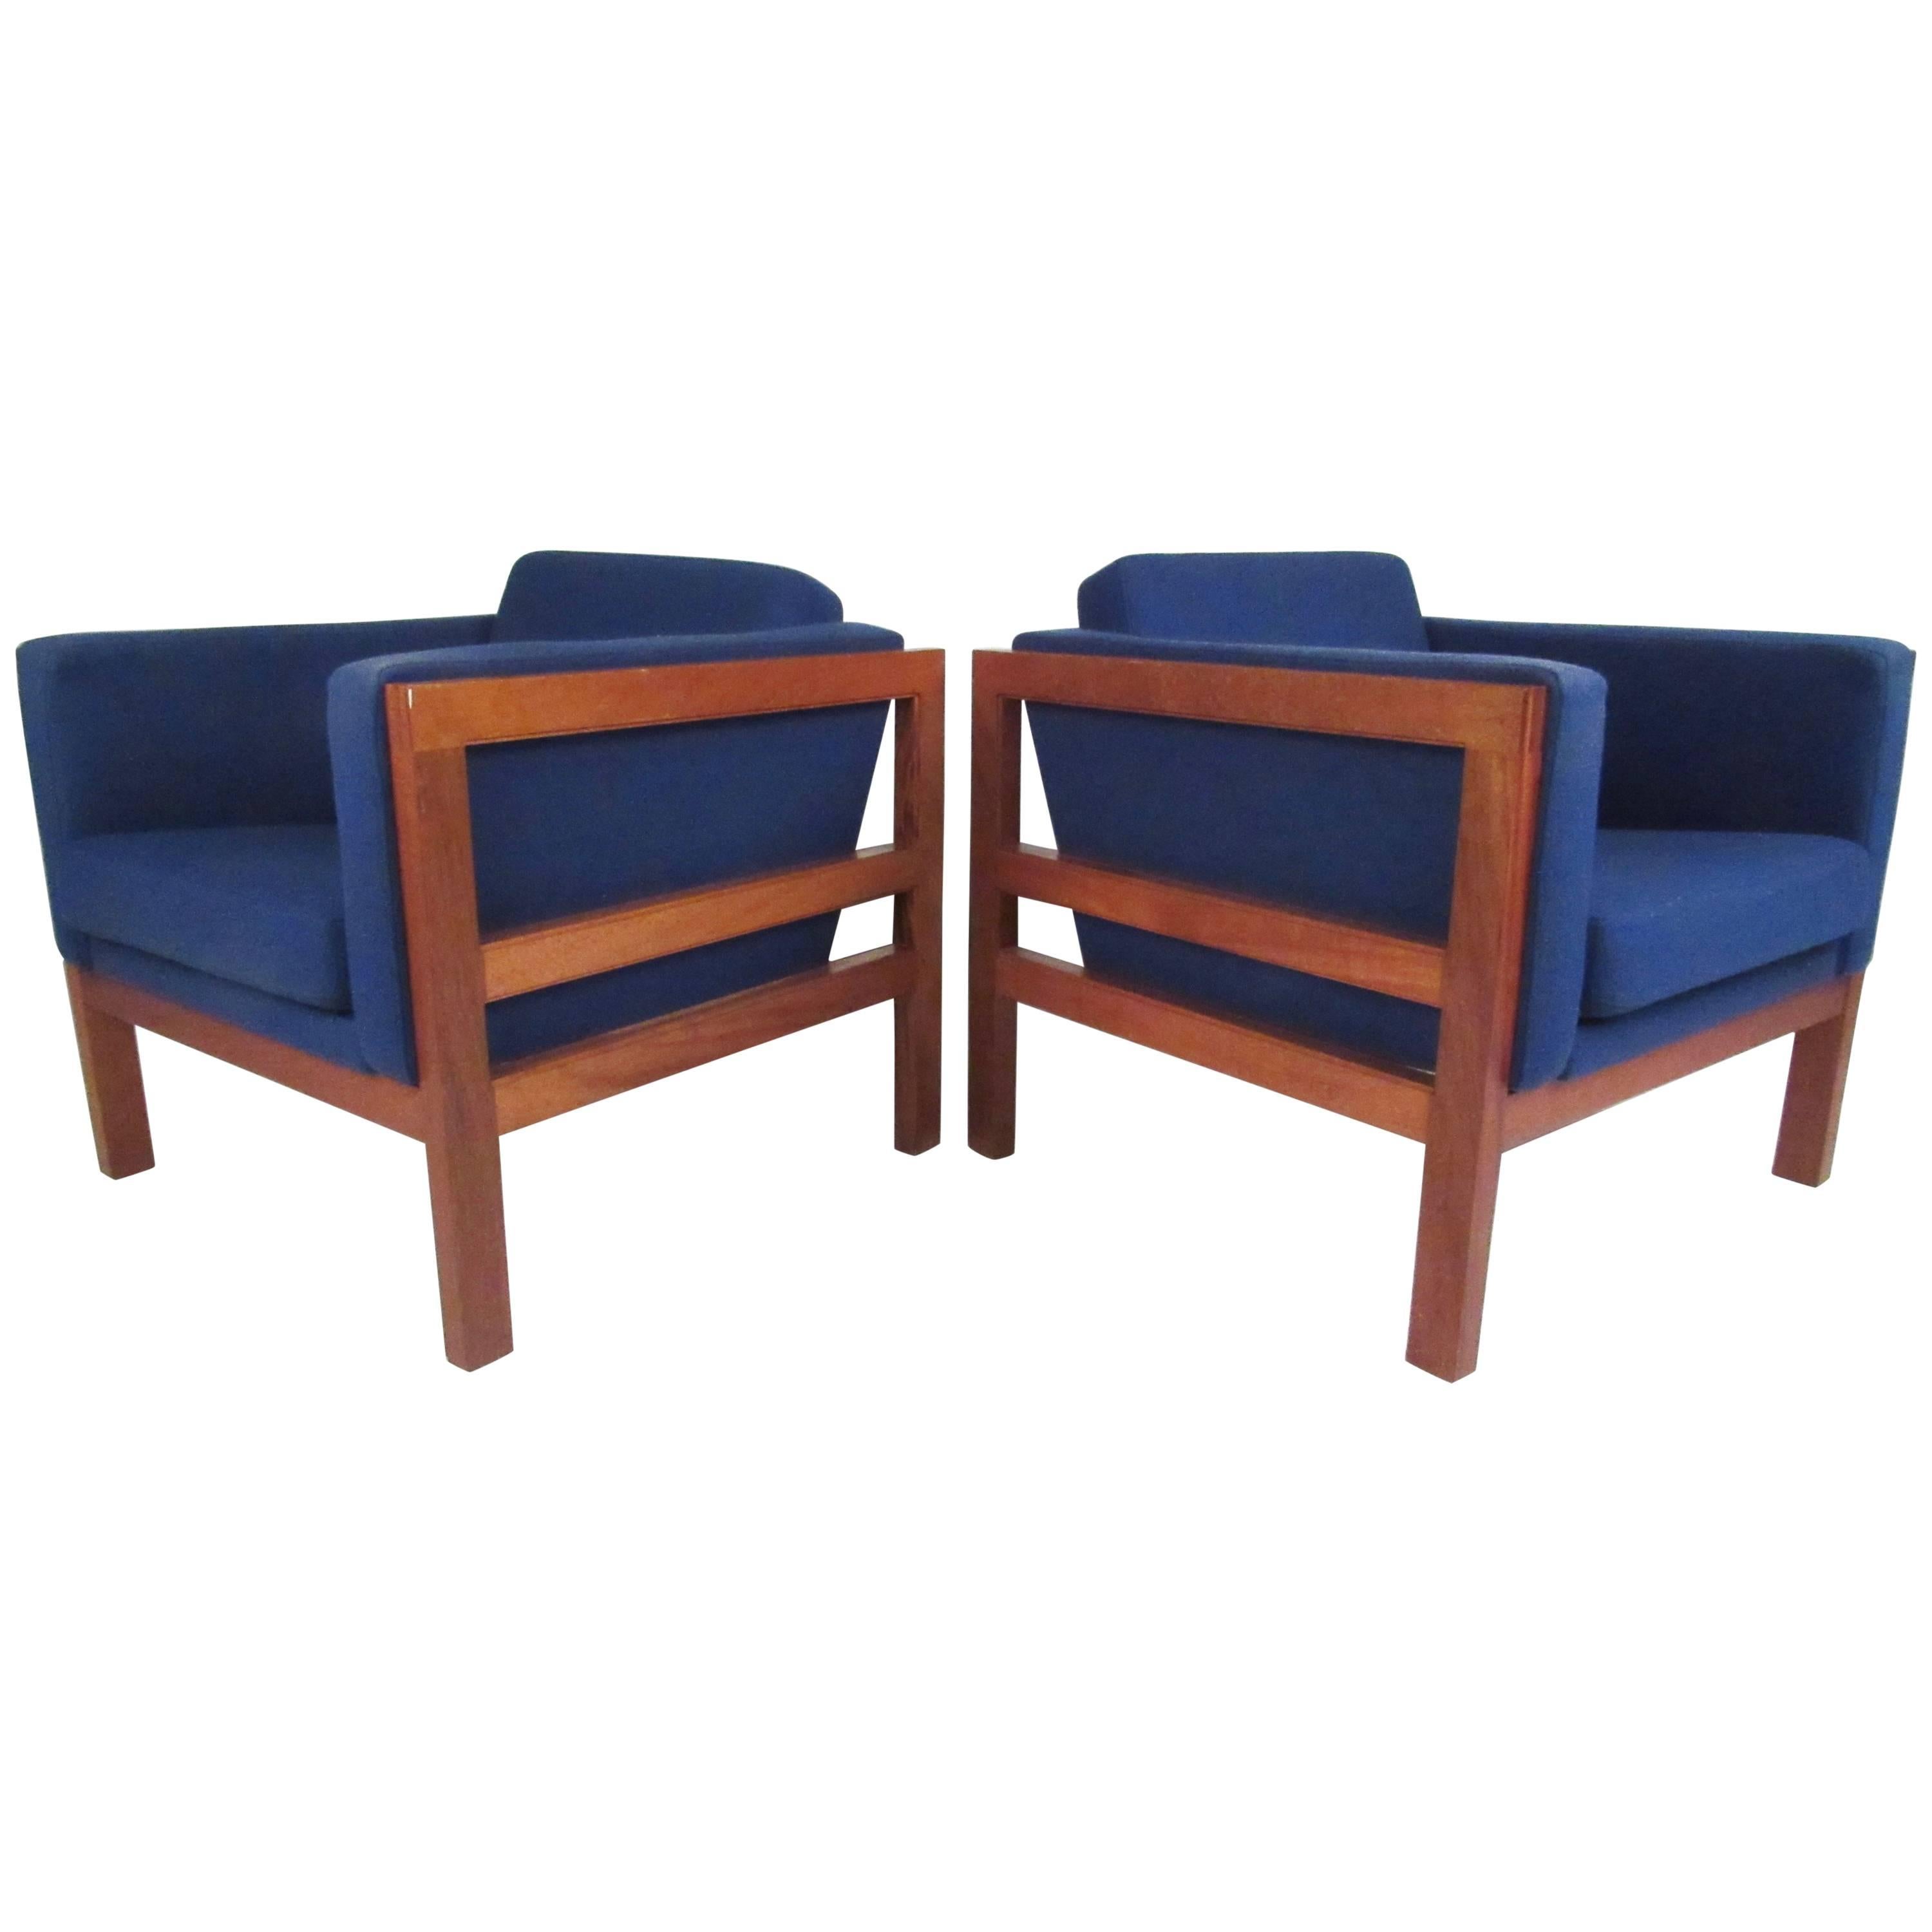 Pair of Scandinavian Modern Club Chairs by Otto Larsen for Ottsøborg Mobler